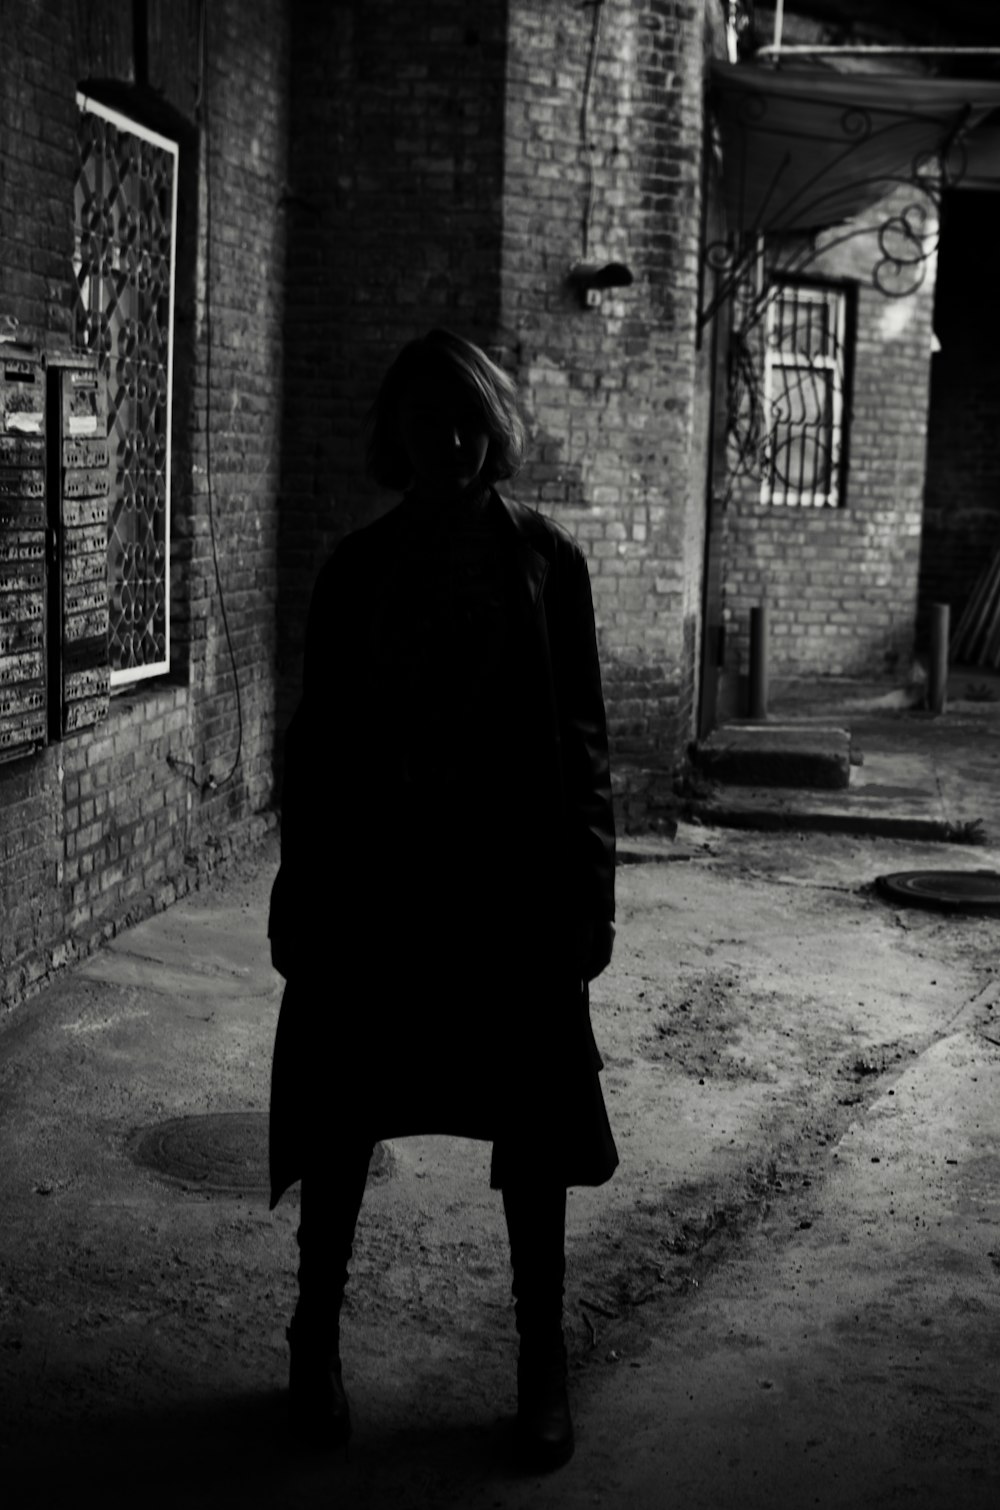 person in black hoodie standing on sidewalk during daytime